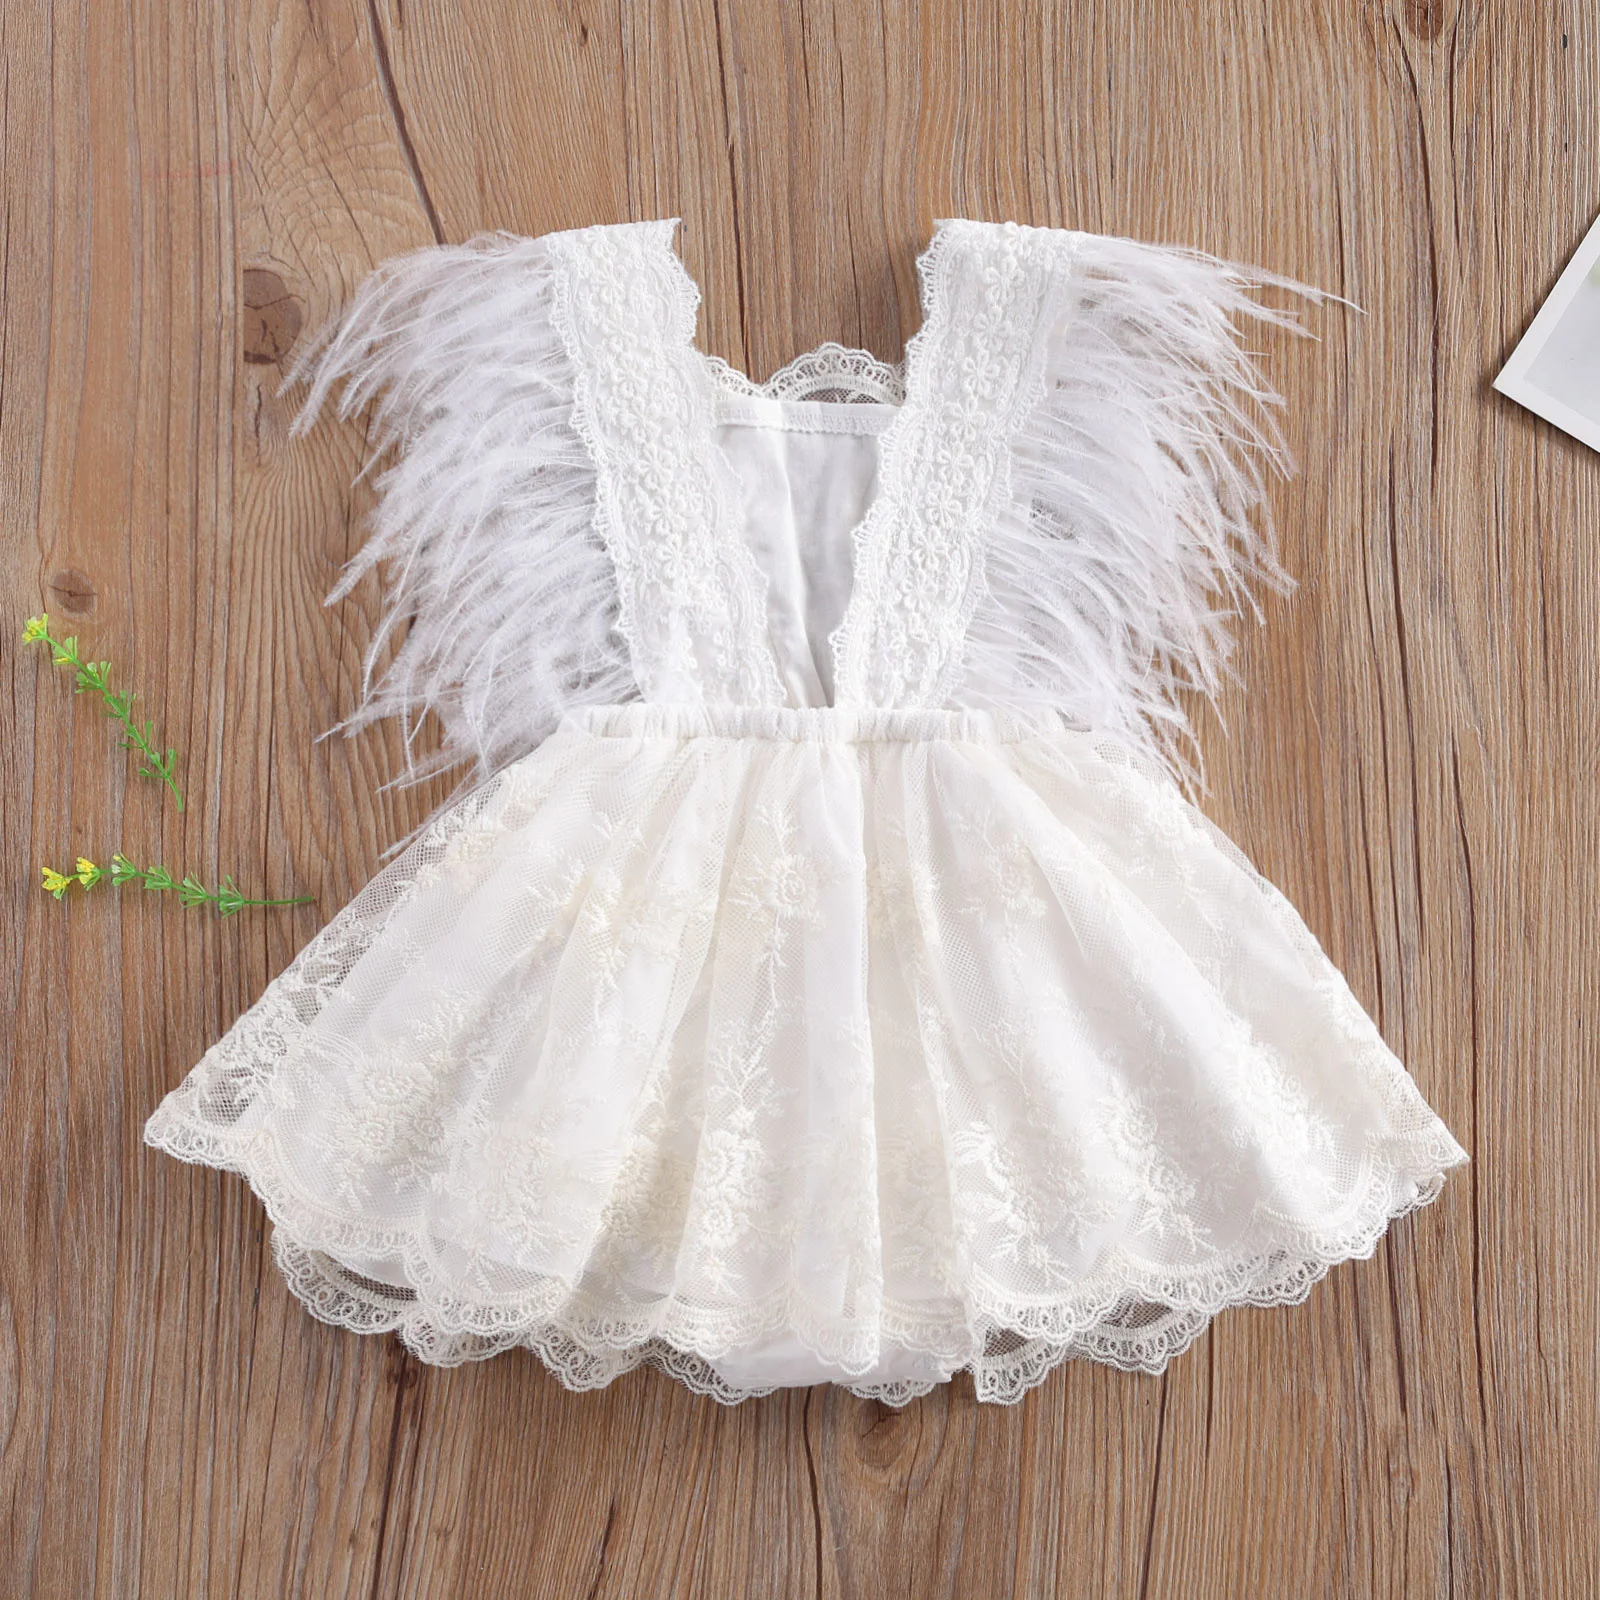 

La Princesa bebé de encaje de las niñas mameluco bordado vestido de dulce bebé plumas volar manga sin respaldo blanco mono